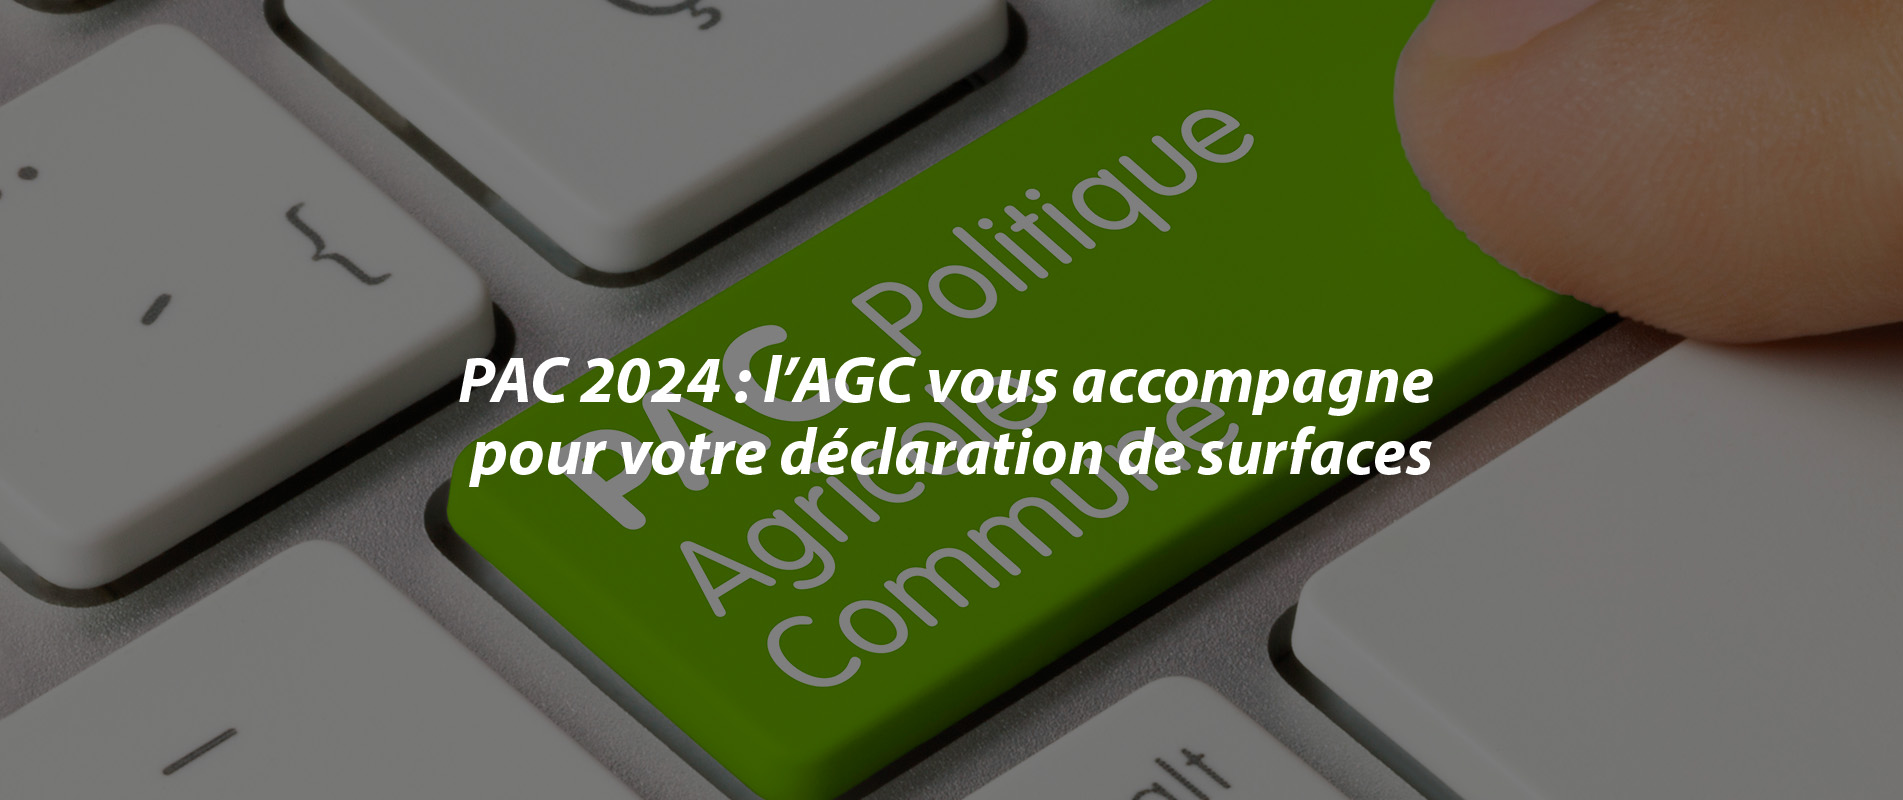 PAC 2024 : L’AGC vous accompagne pour votre déclaration de surfaces